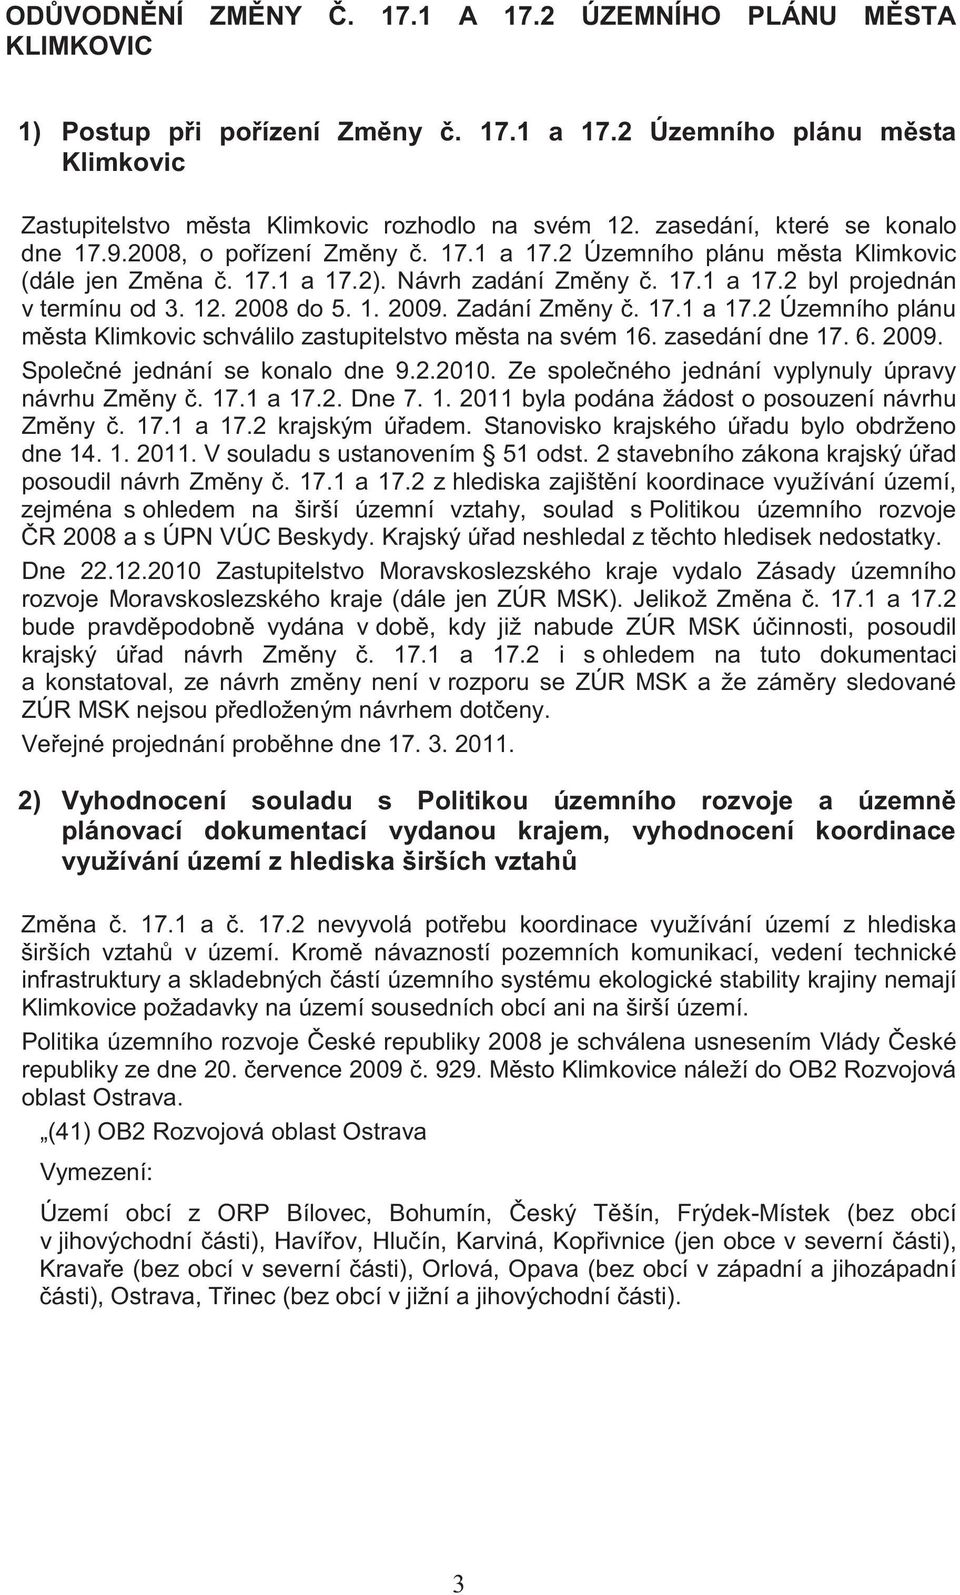 2008 do 5. 1. 2009. Zadání Zm ny. 17.1 a 17.2 Územního plánu m sta Klimkovic schválilo zastupitelstvo m sta na svém 16. zasedání dne 17. 6. 2009. Spole né jednání se konalo dne 9.2.2010.